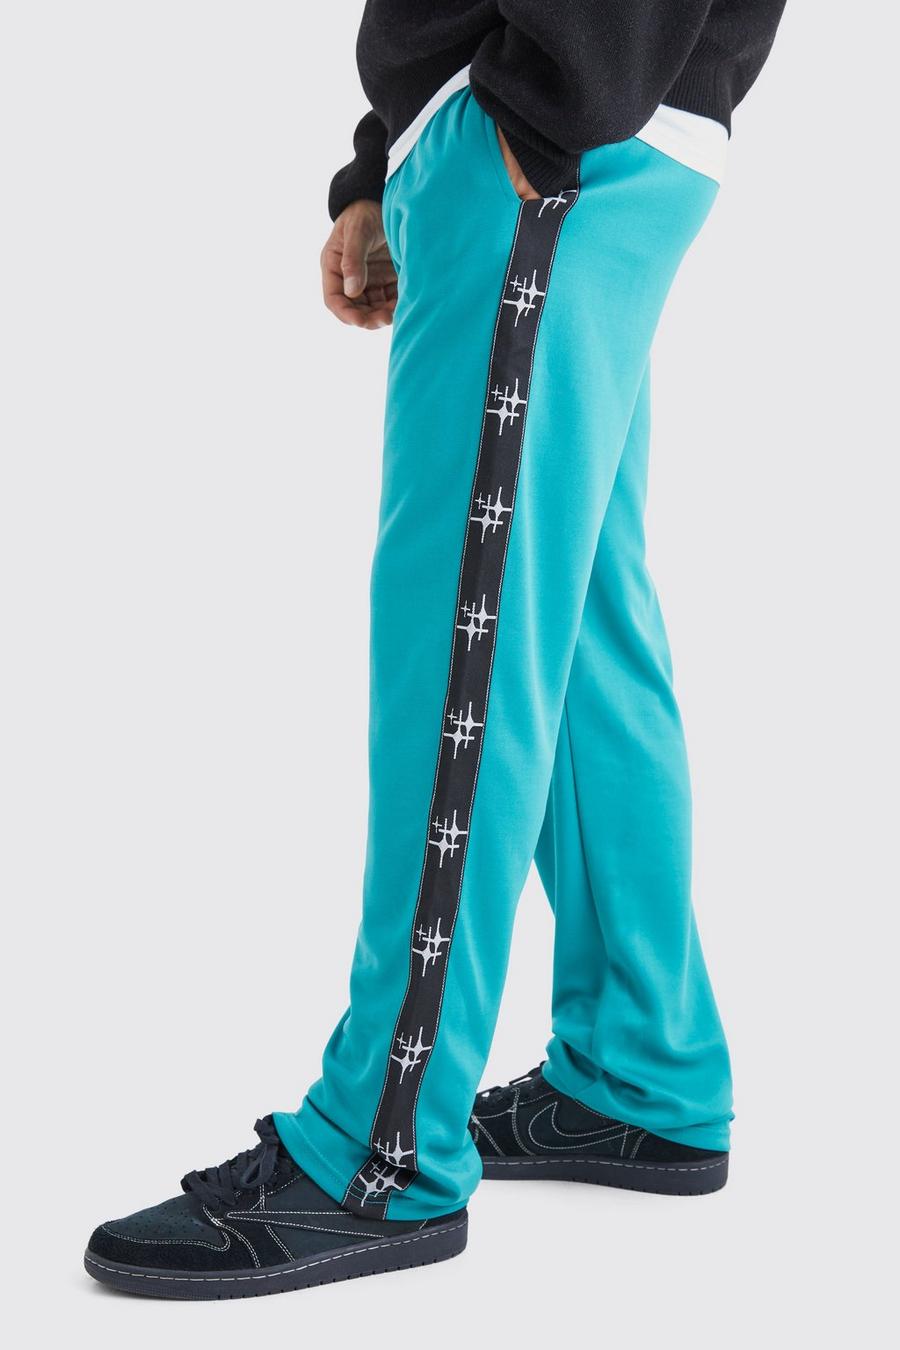 Pantaloni tuta oversize in tricot con striscia laterale, Teal gerde